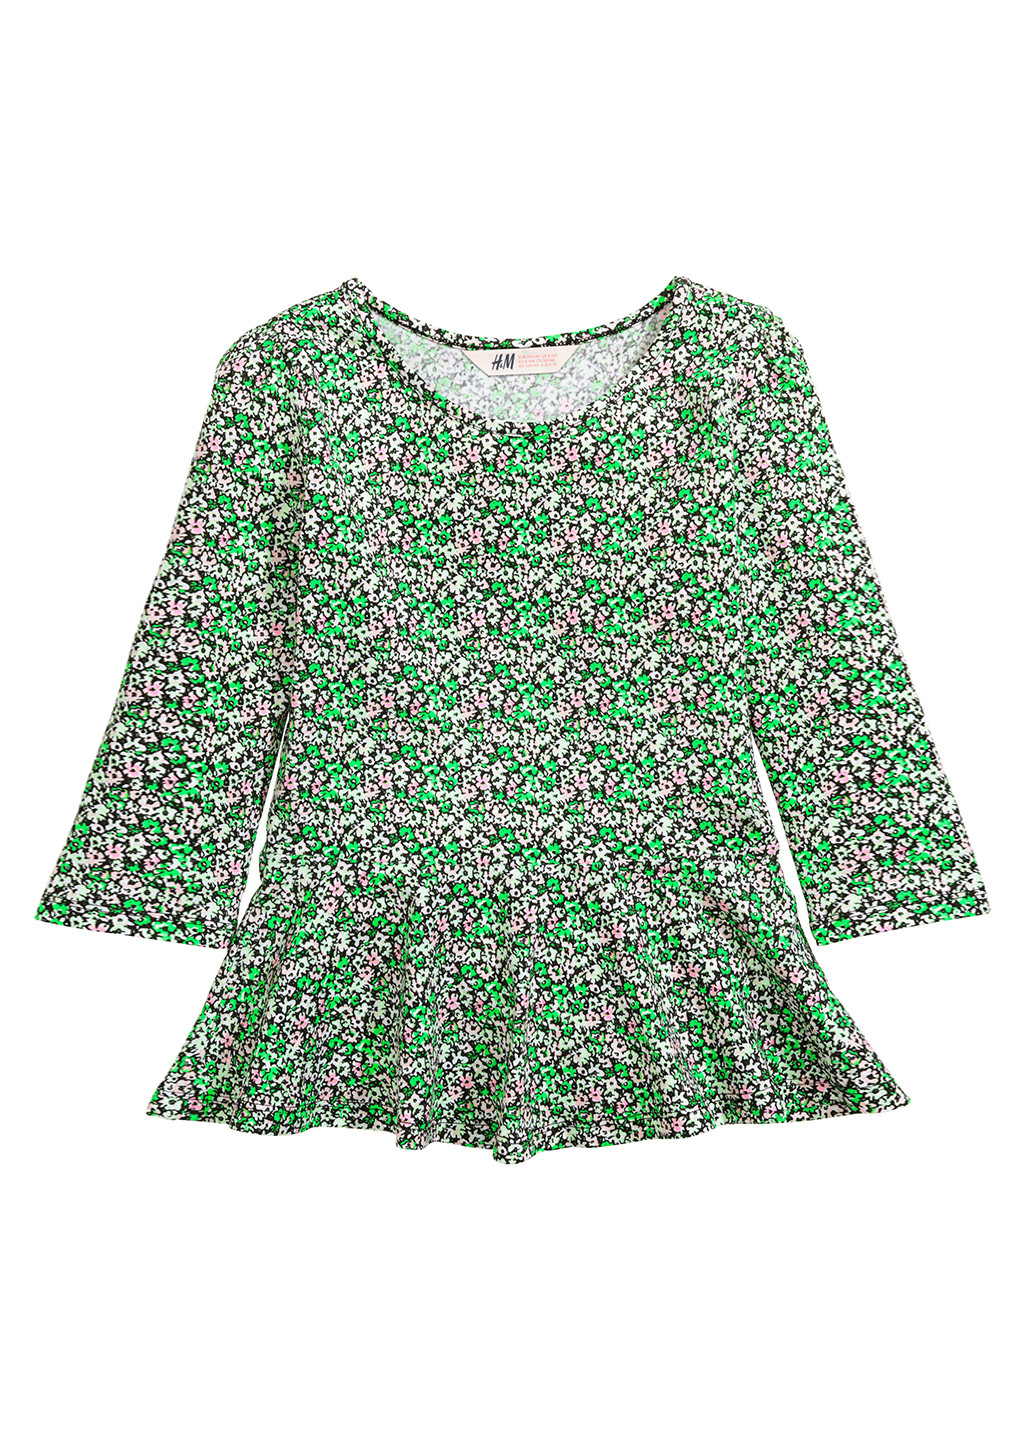 Зеленая цветочной расцветки блузка H&M демисезонная